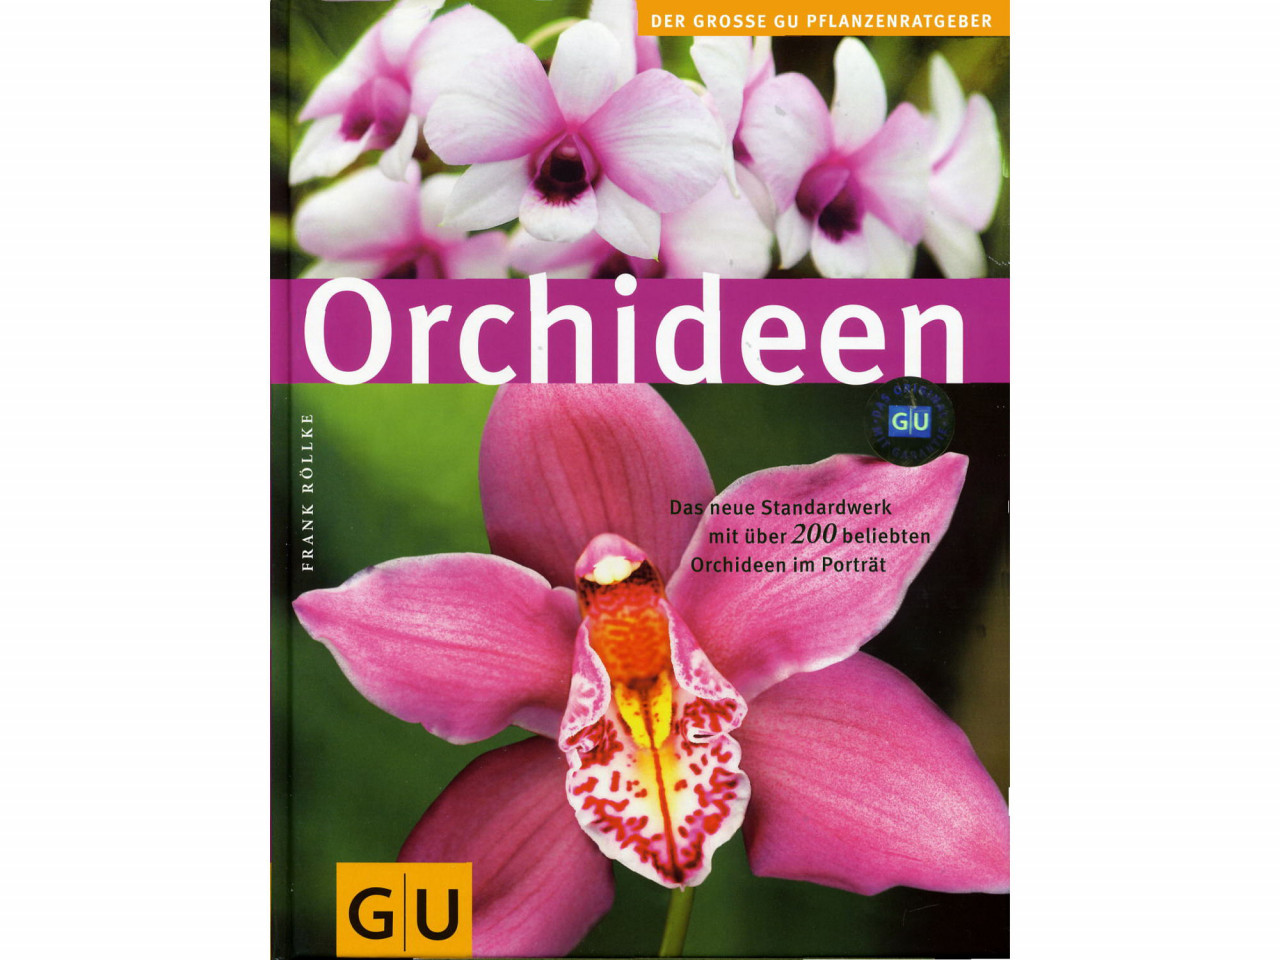 GU - Orchideen, der große GU Pflanzenratgeber